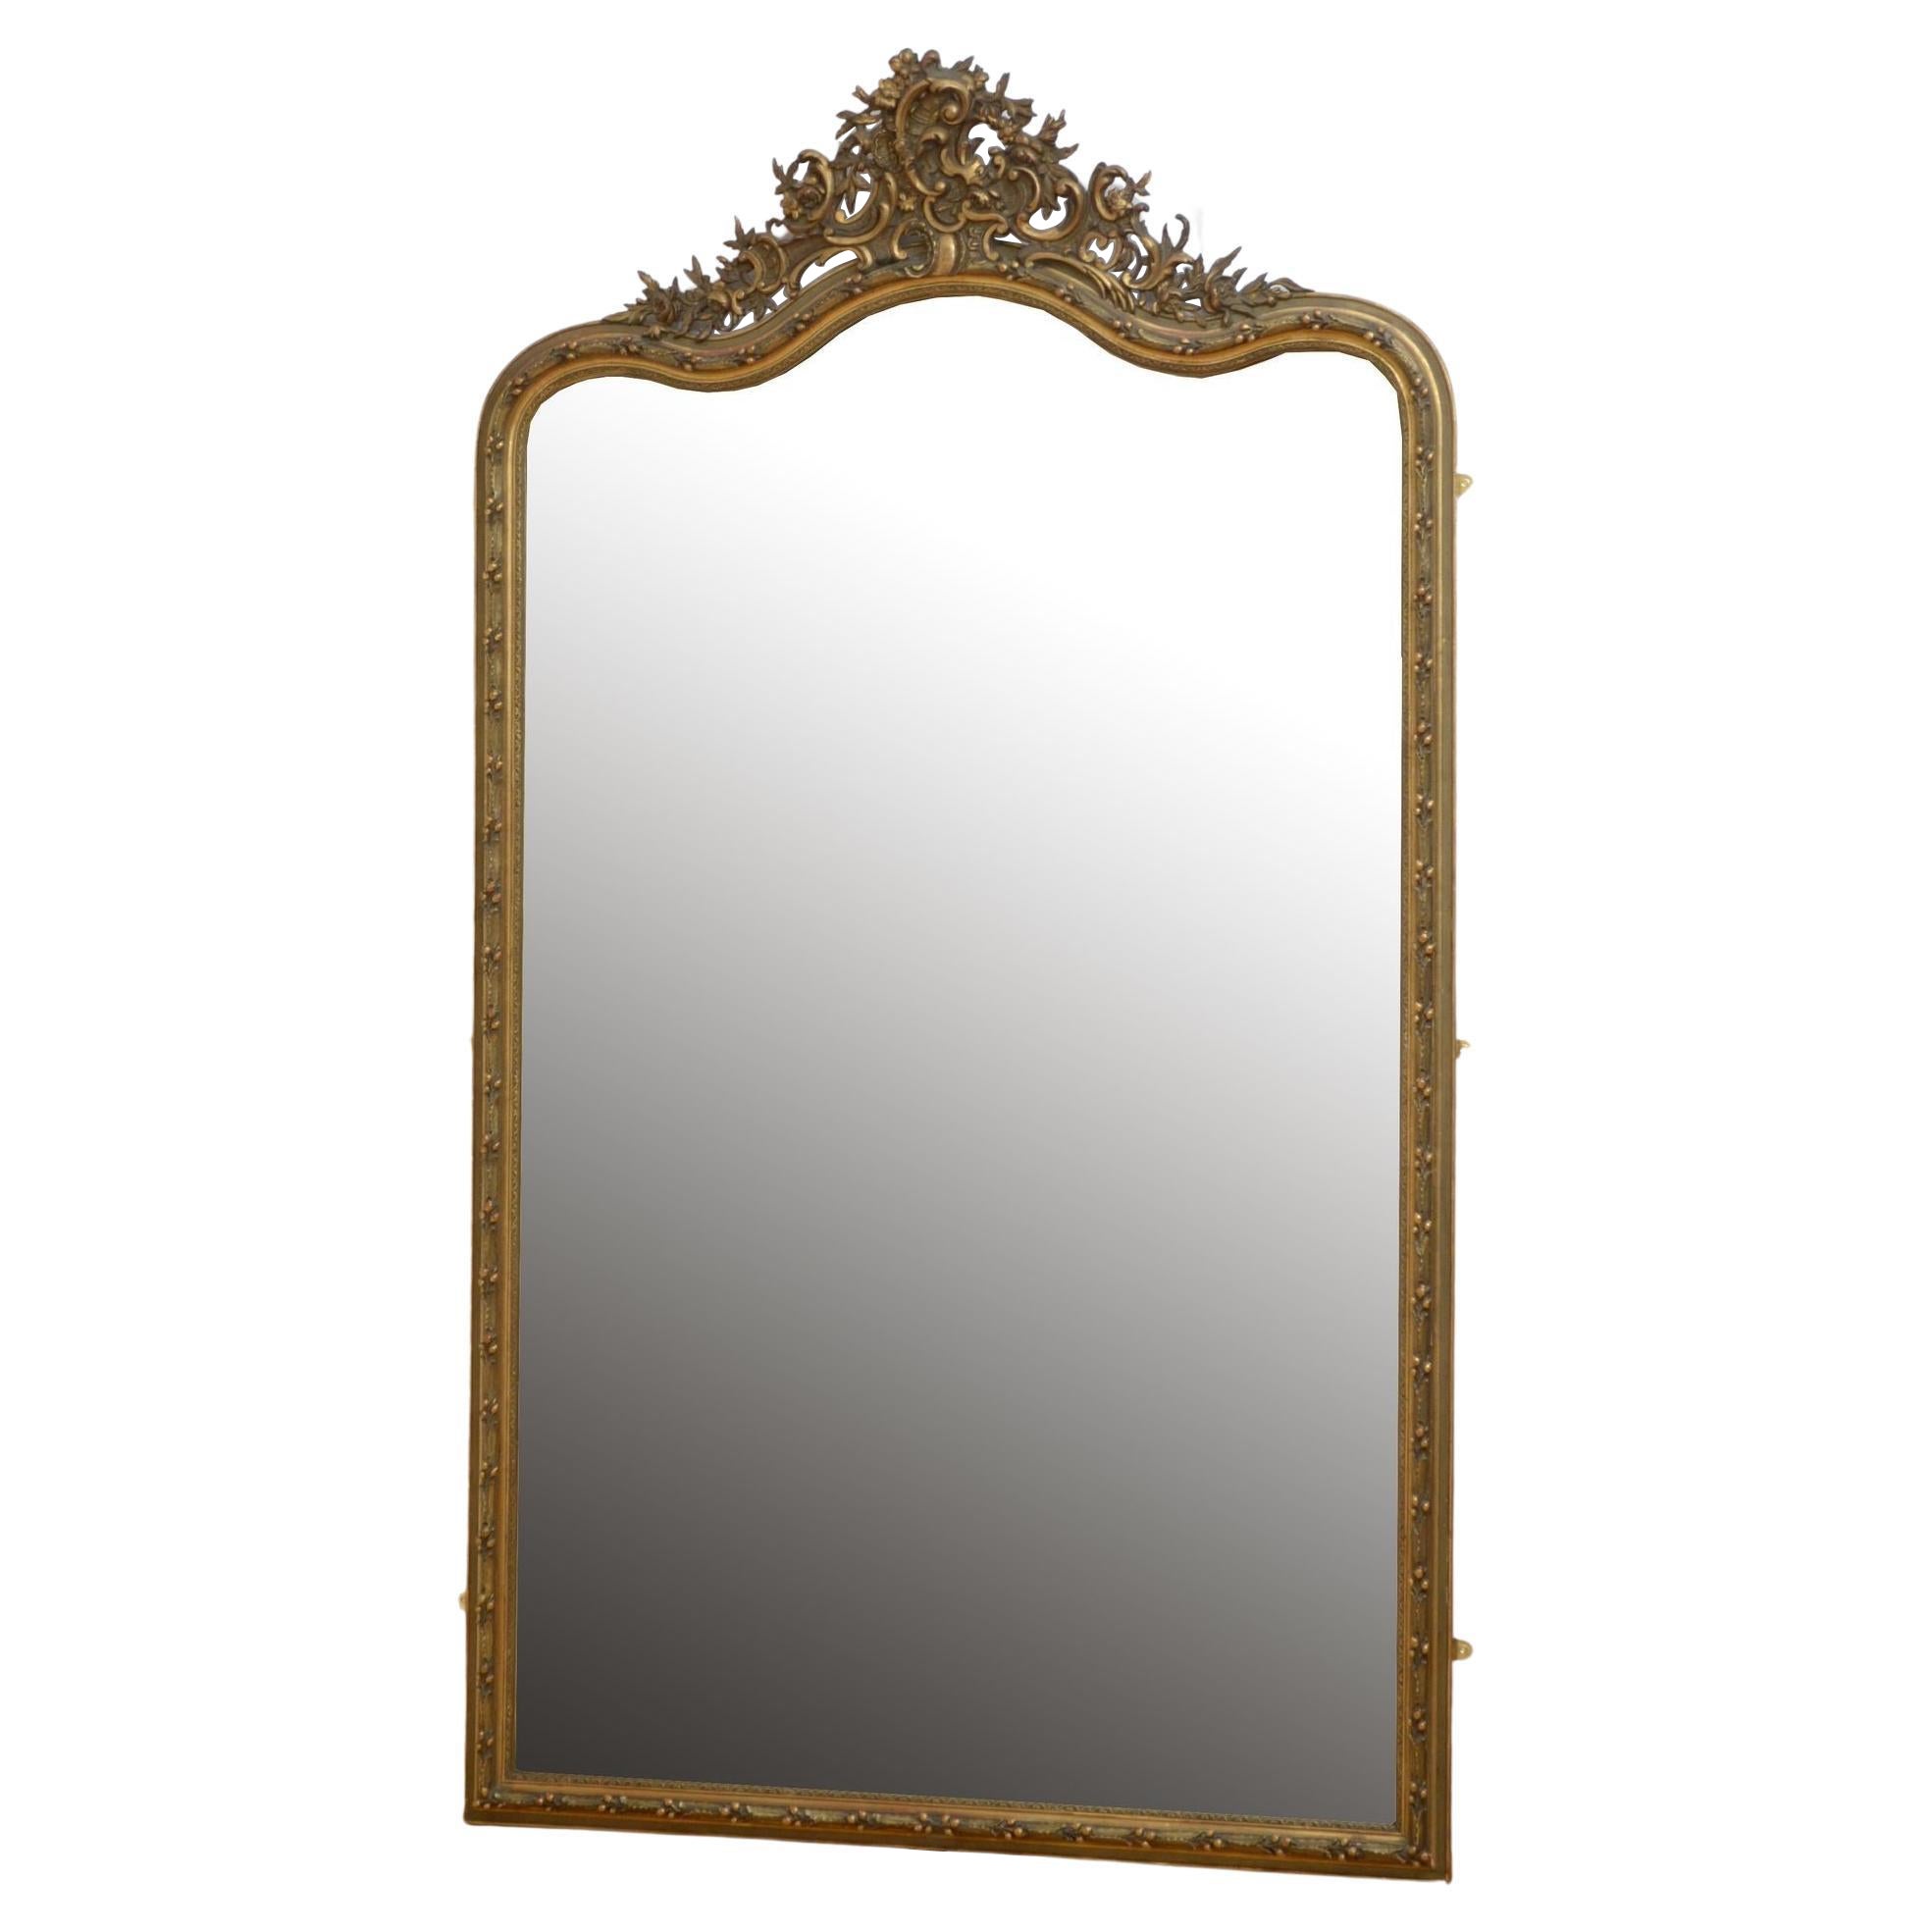 Miroir en bois doré Leaner H221 cm de longueur totale du 19ème siècle